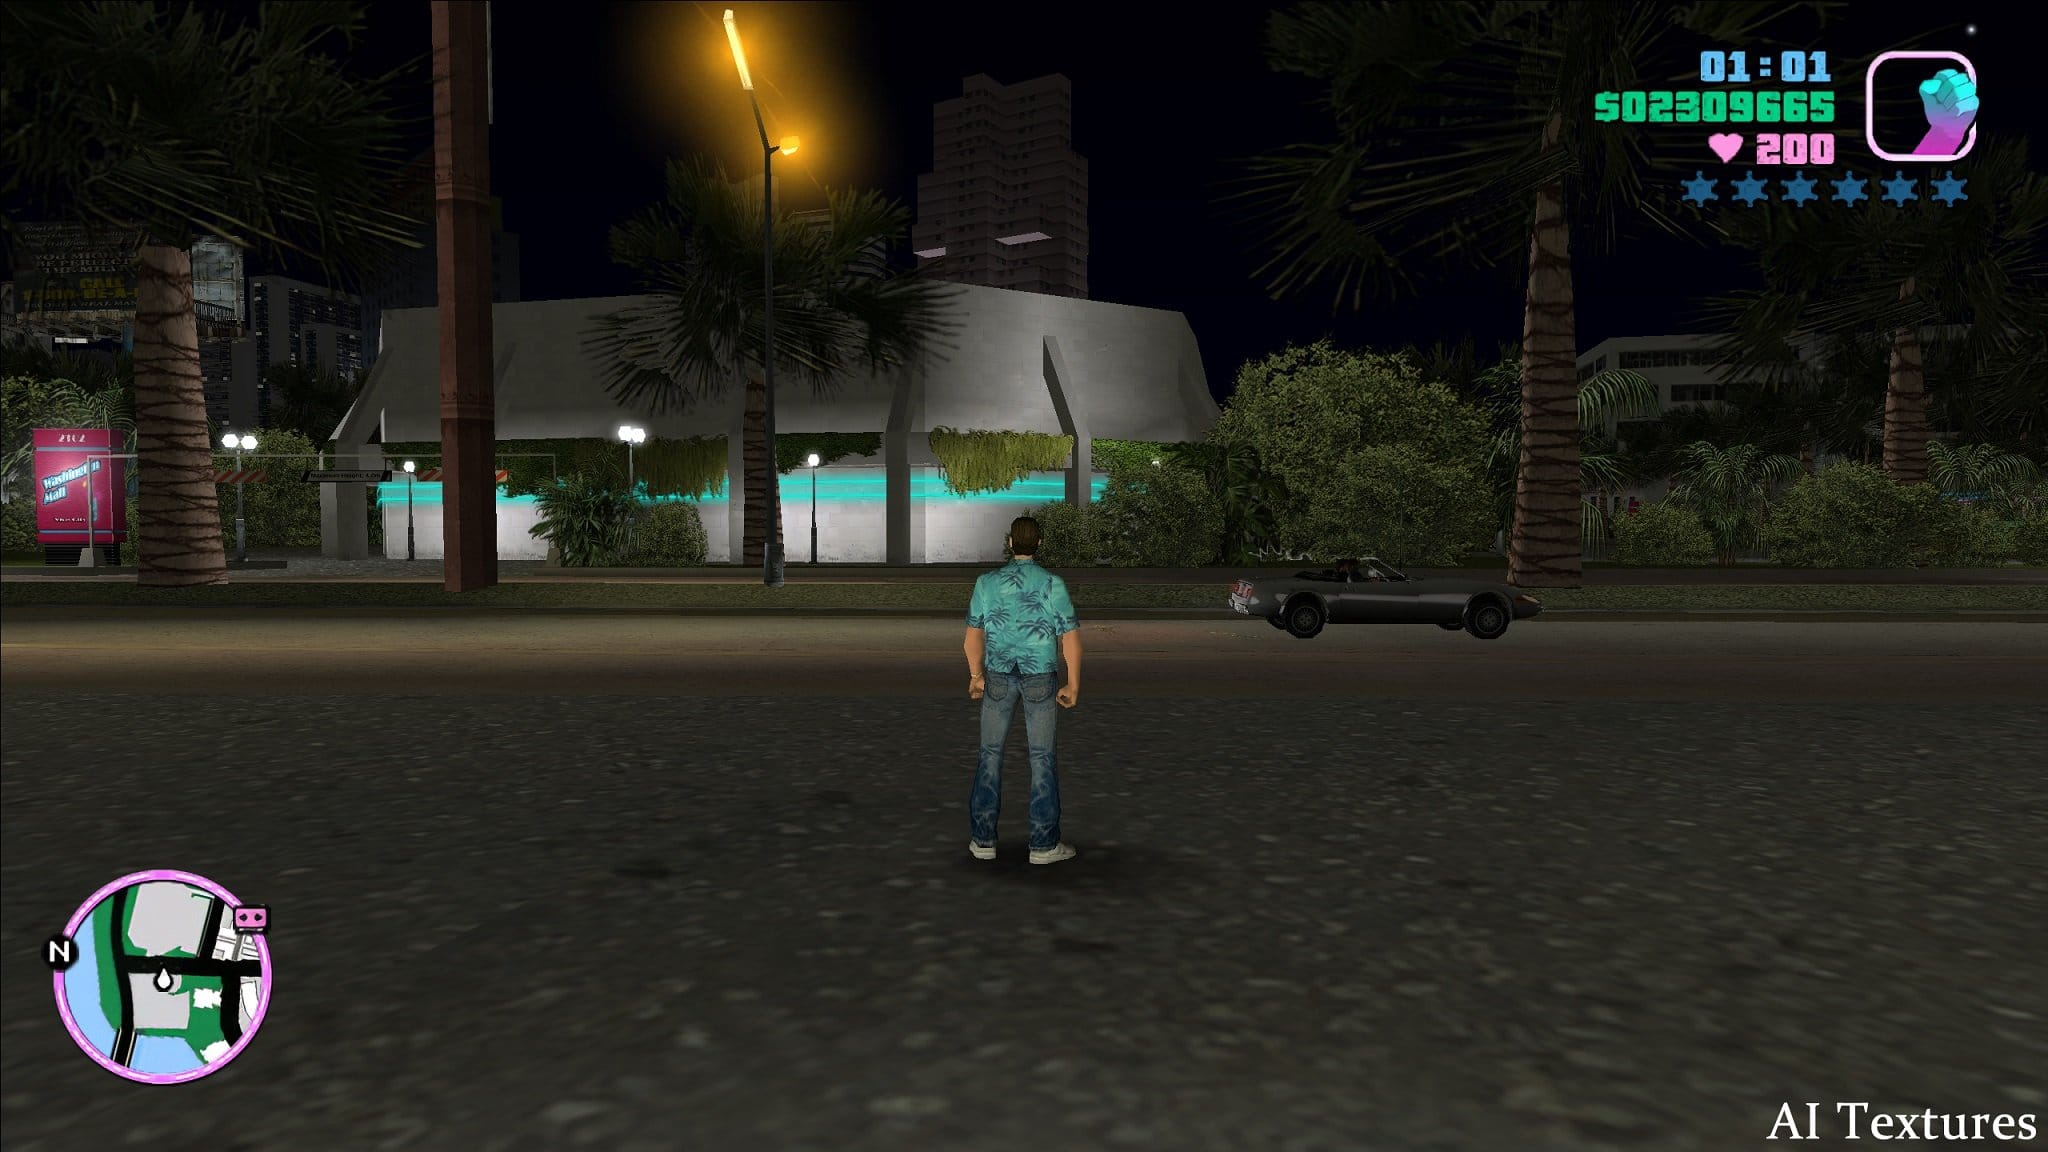 Image 17 : Des textures améliorées par IA pour le légendaire Grand Theft Auto : Vice City !